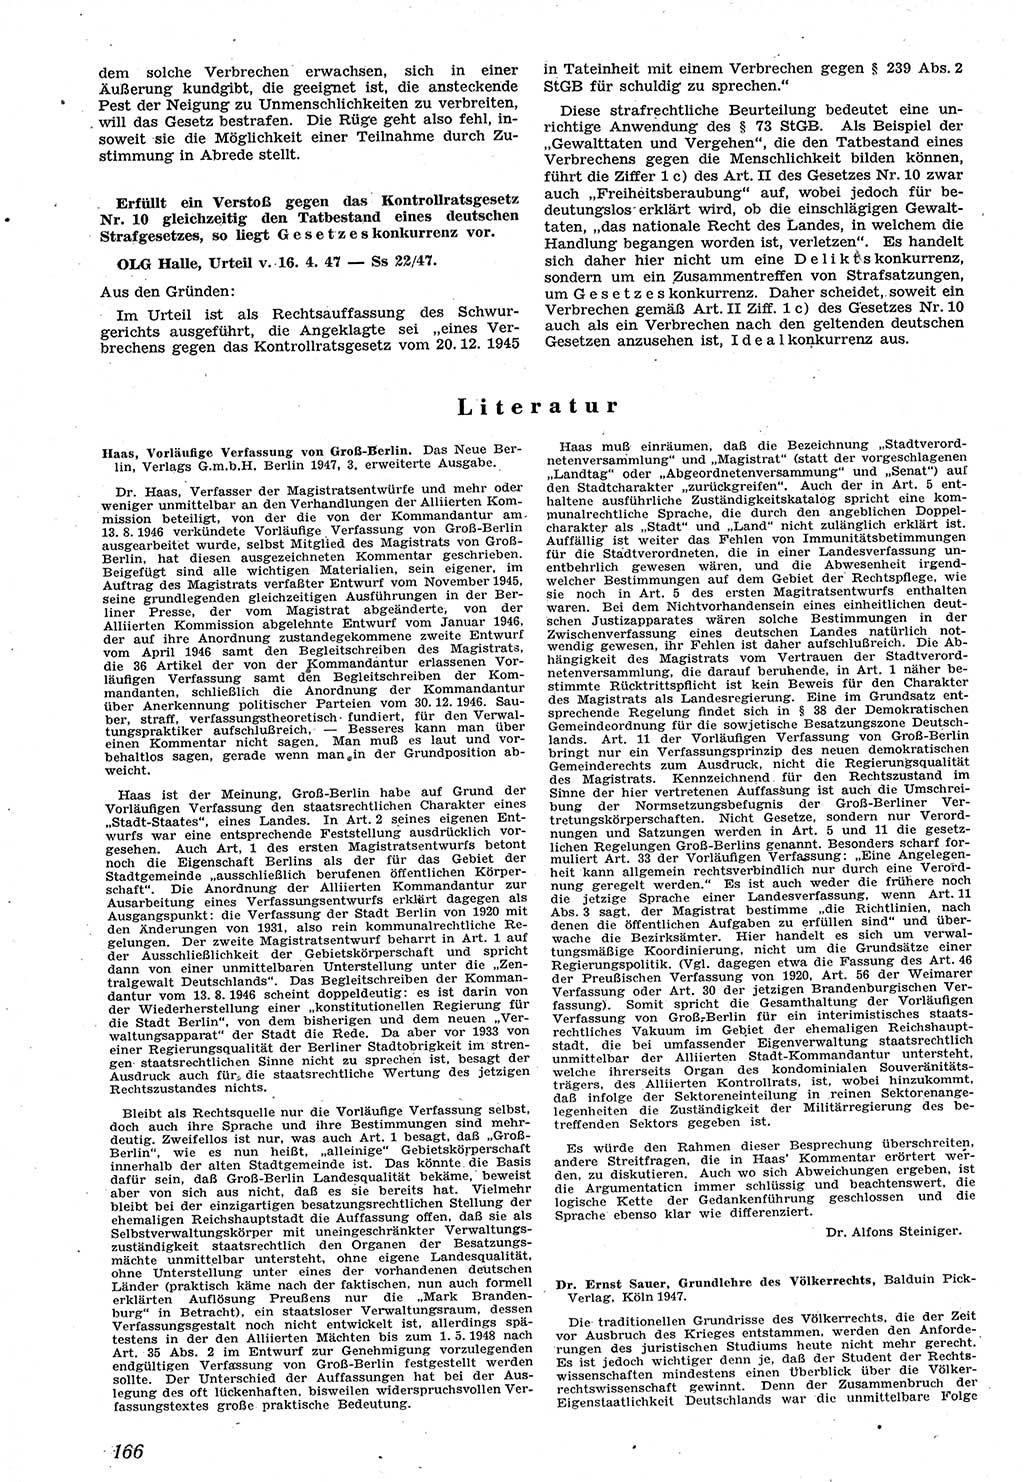 Neue Justiz (NJ), Zeitschrift für Recht und Rechtswissenschaft [Sowjetische Besatzungszone (SBZ) Deutschland], 1. Jahrgang 1947, Seite 166 (NJ SBZ Dtl. 1947, S. 166)